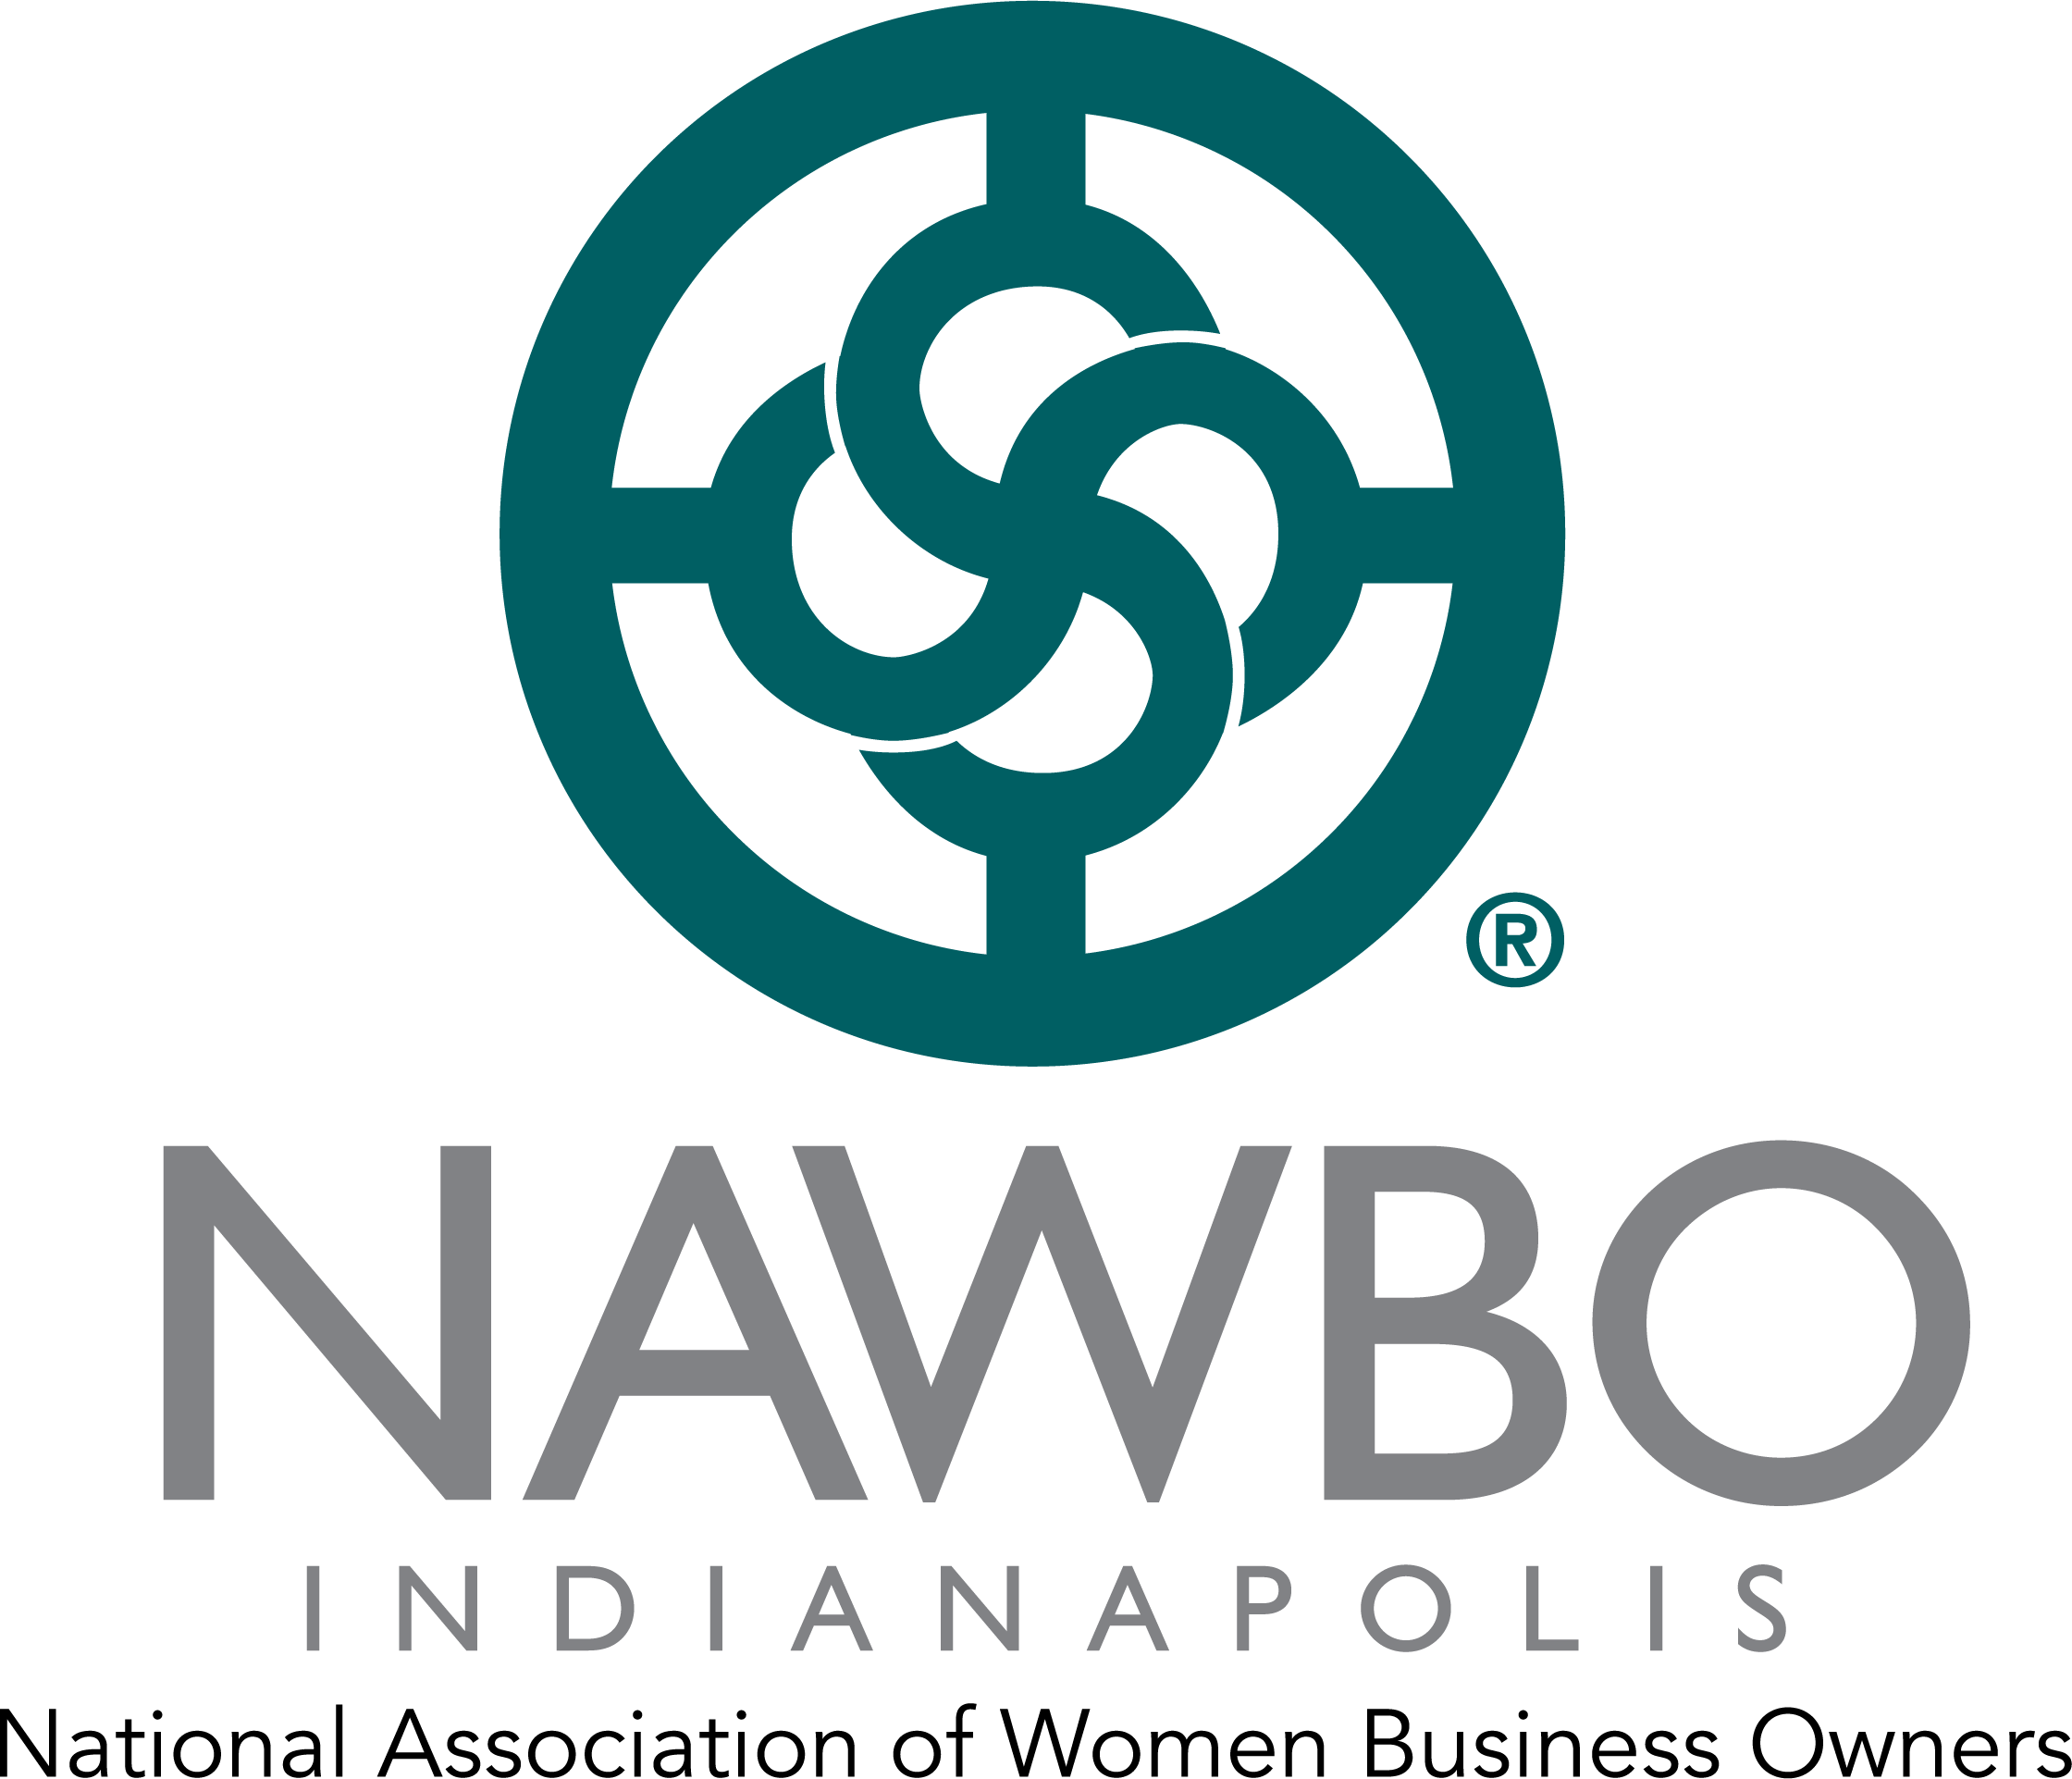 NAWBO Logo